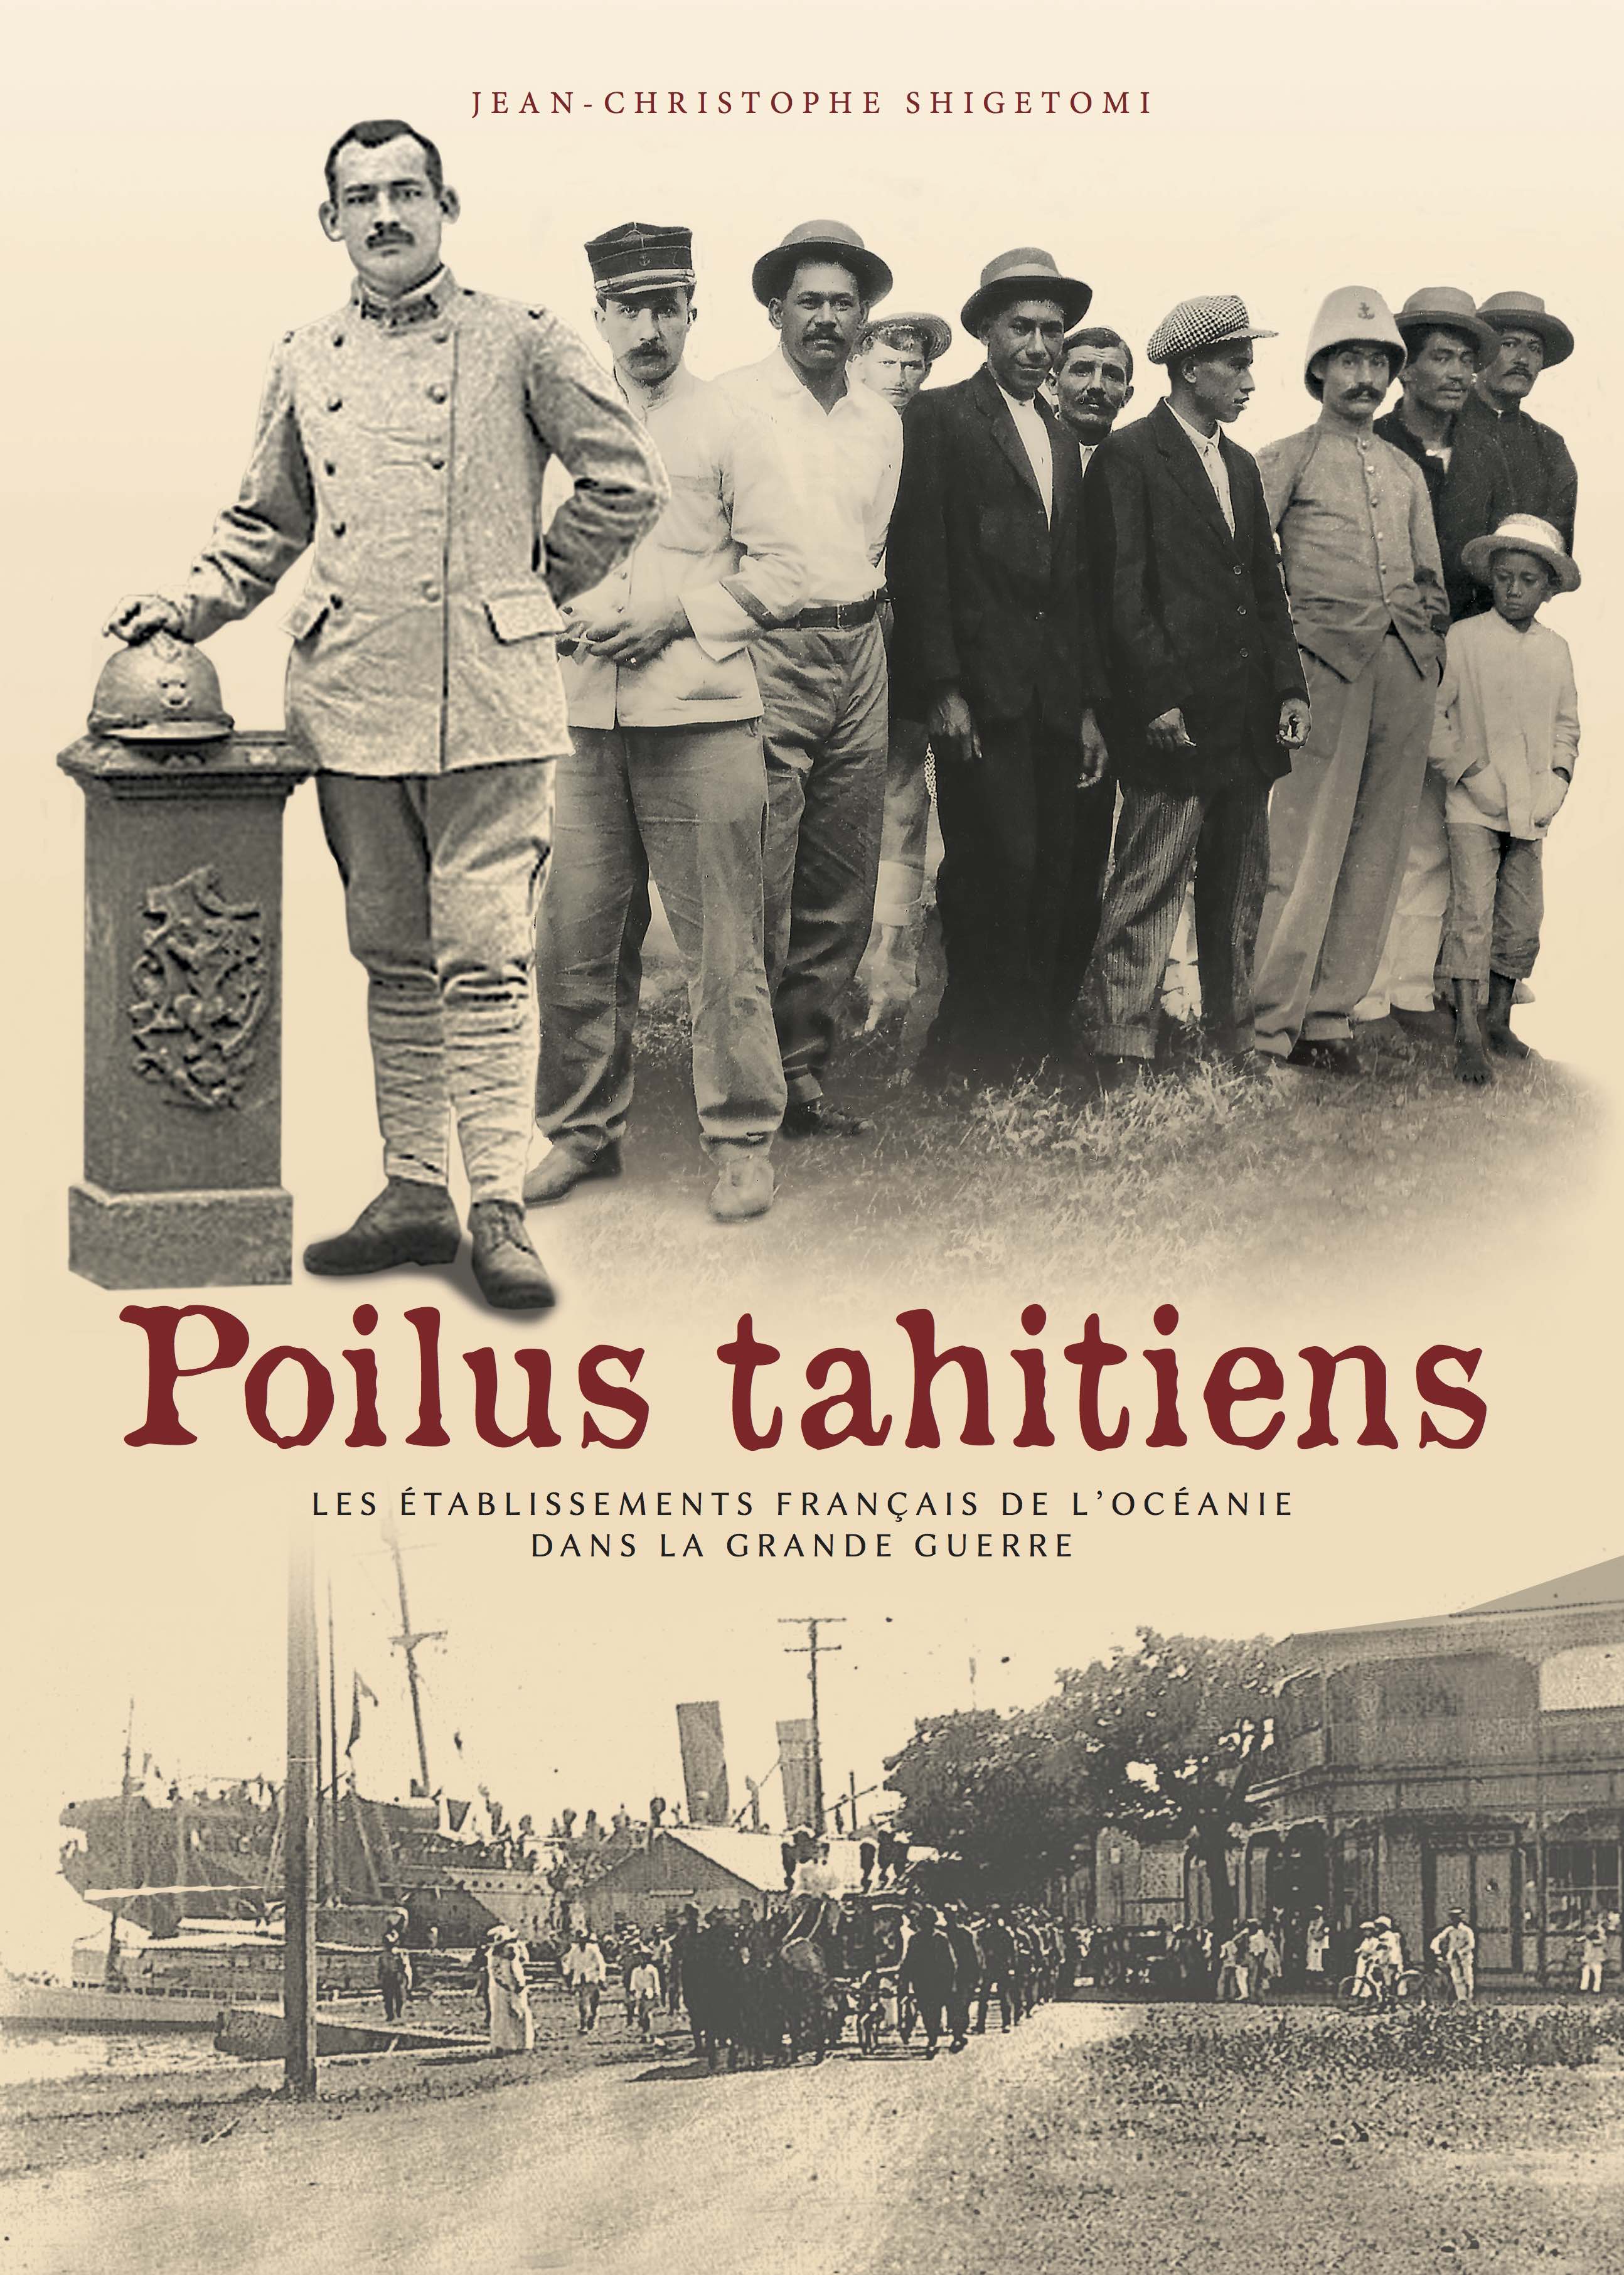 Shigetomi publie un livre hommage aux Poilus tahitiens